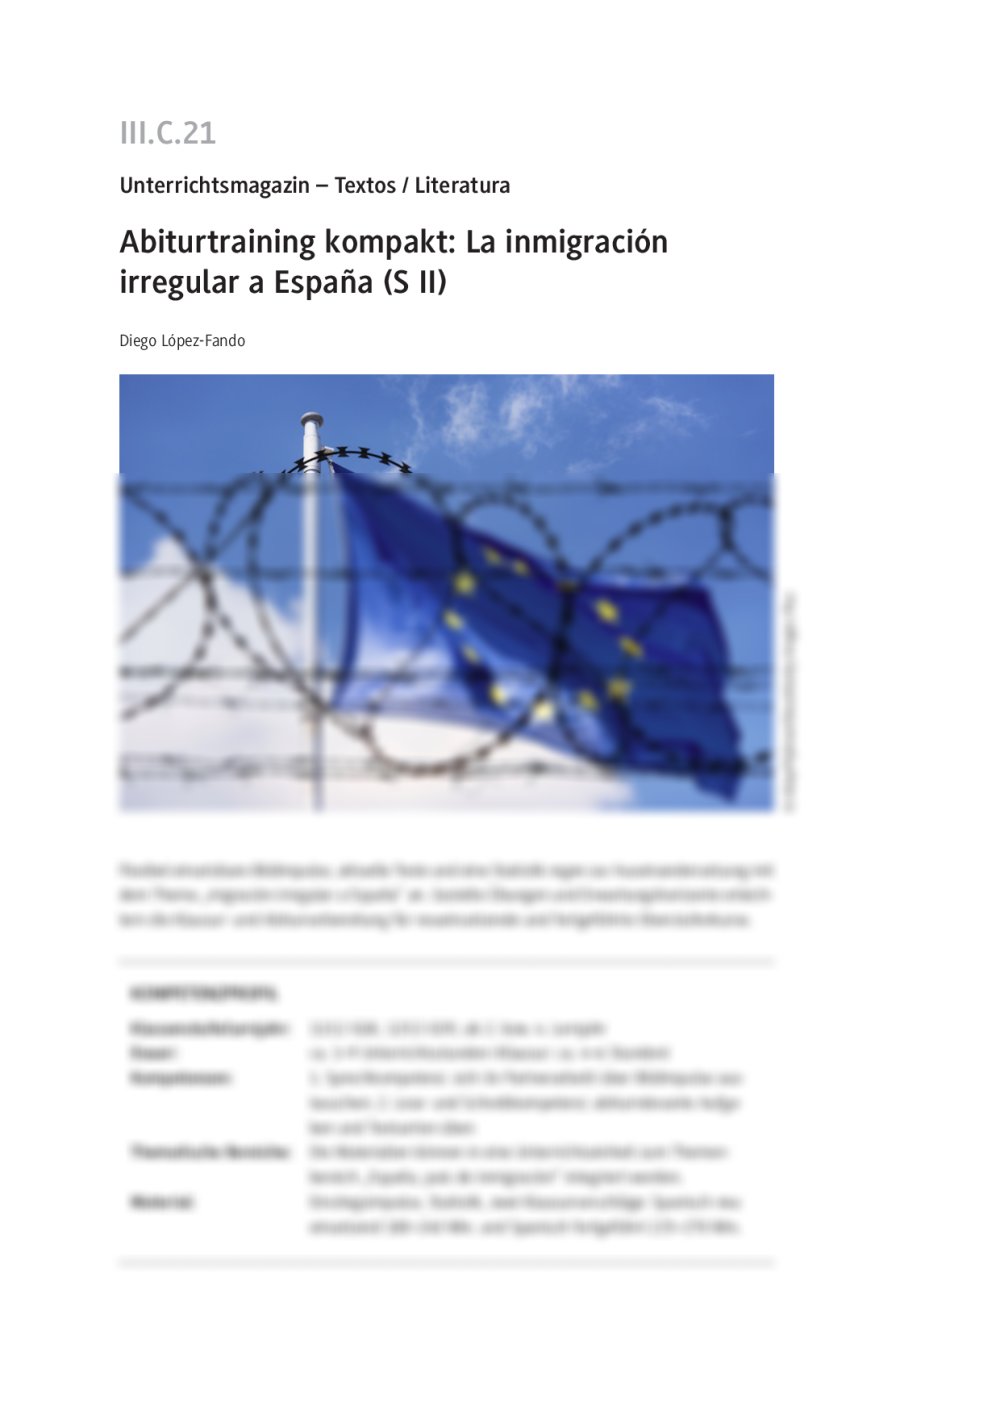 Abiturtraining kompakt: La inmigración irregular a España - Seite 1